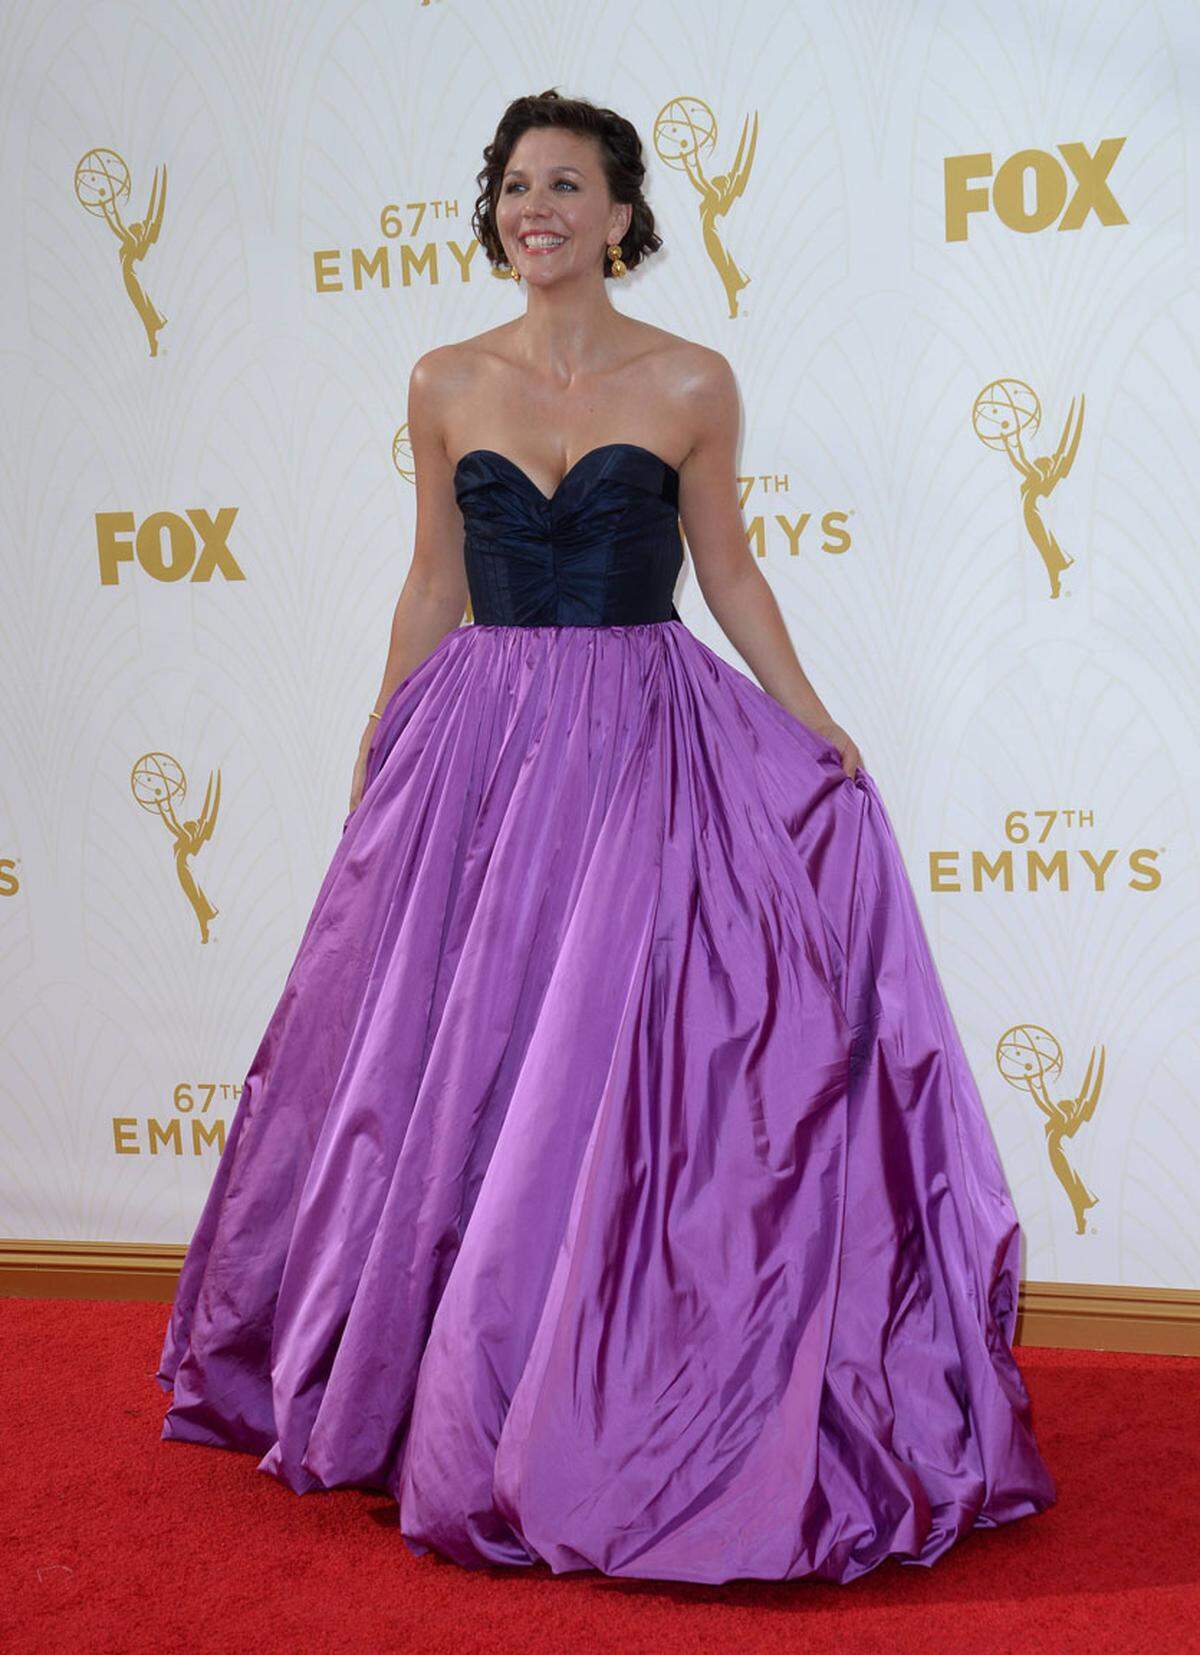 An ein Abschlussball-Kleid aus den 80er-Jahren erinnerte die Robe von Oscar de la Renta, die Maggy Gyllenhaal trug.